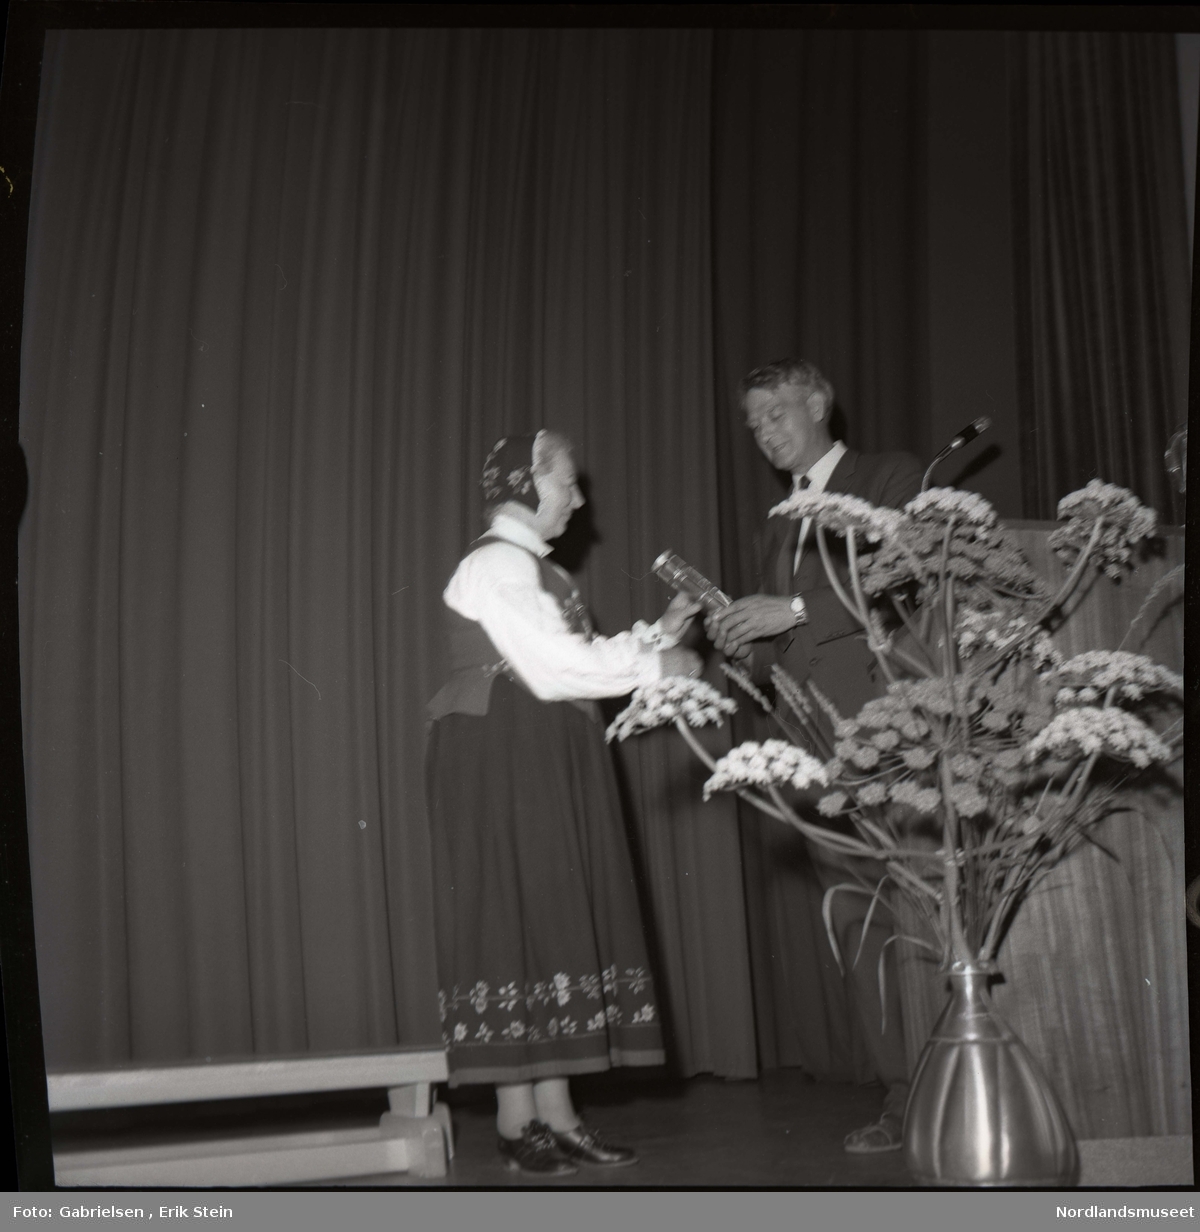 Fotografi av en eldre kvinne kledd i en bunad og en bunadshette som står på en scene i en sal og får utdelt en pris ev en mann kledd i dress med slips som står vedsiden av en talestol med en mikrofon og en stor blomsterkrukke 
som det vokser mange blomster i og en benk som står på scenen og man ser en rekke av blomstermønster på
bunaden til kvinnen i skjørtet på bunaden og bunadshetten